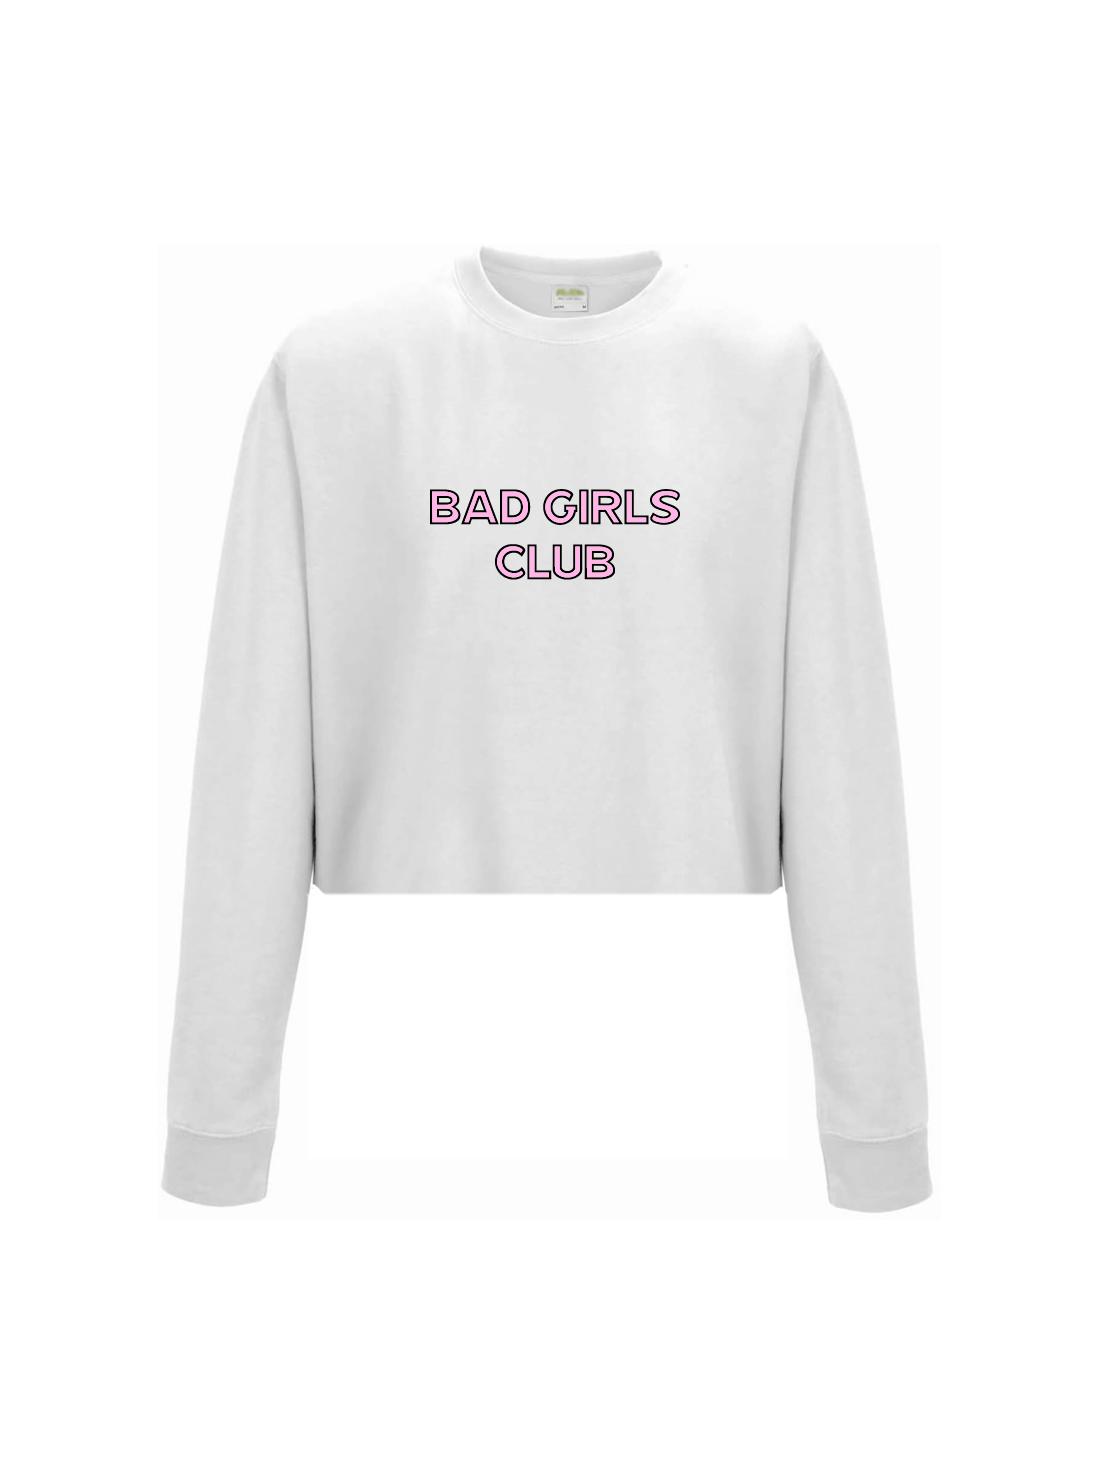 BAD GIRLS CLUB cropped sweatshirt